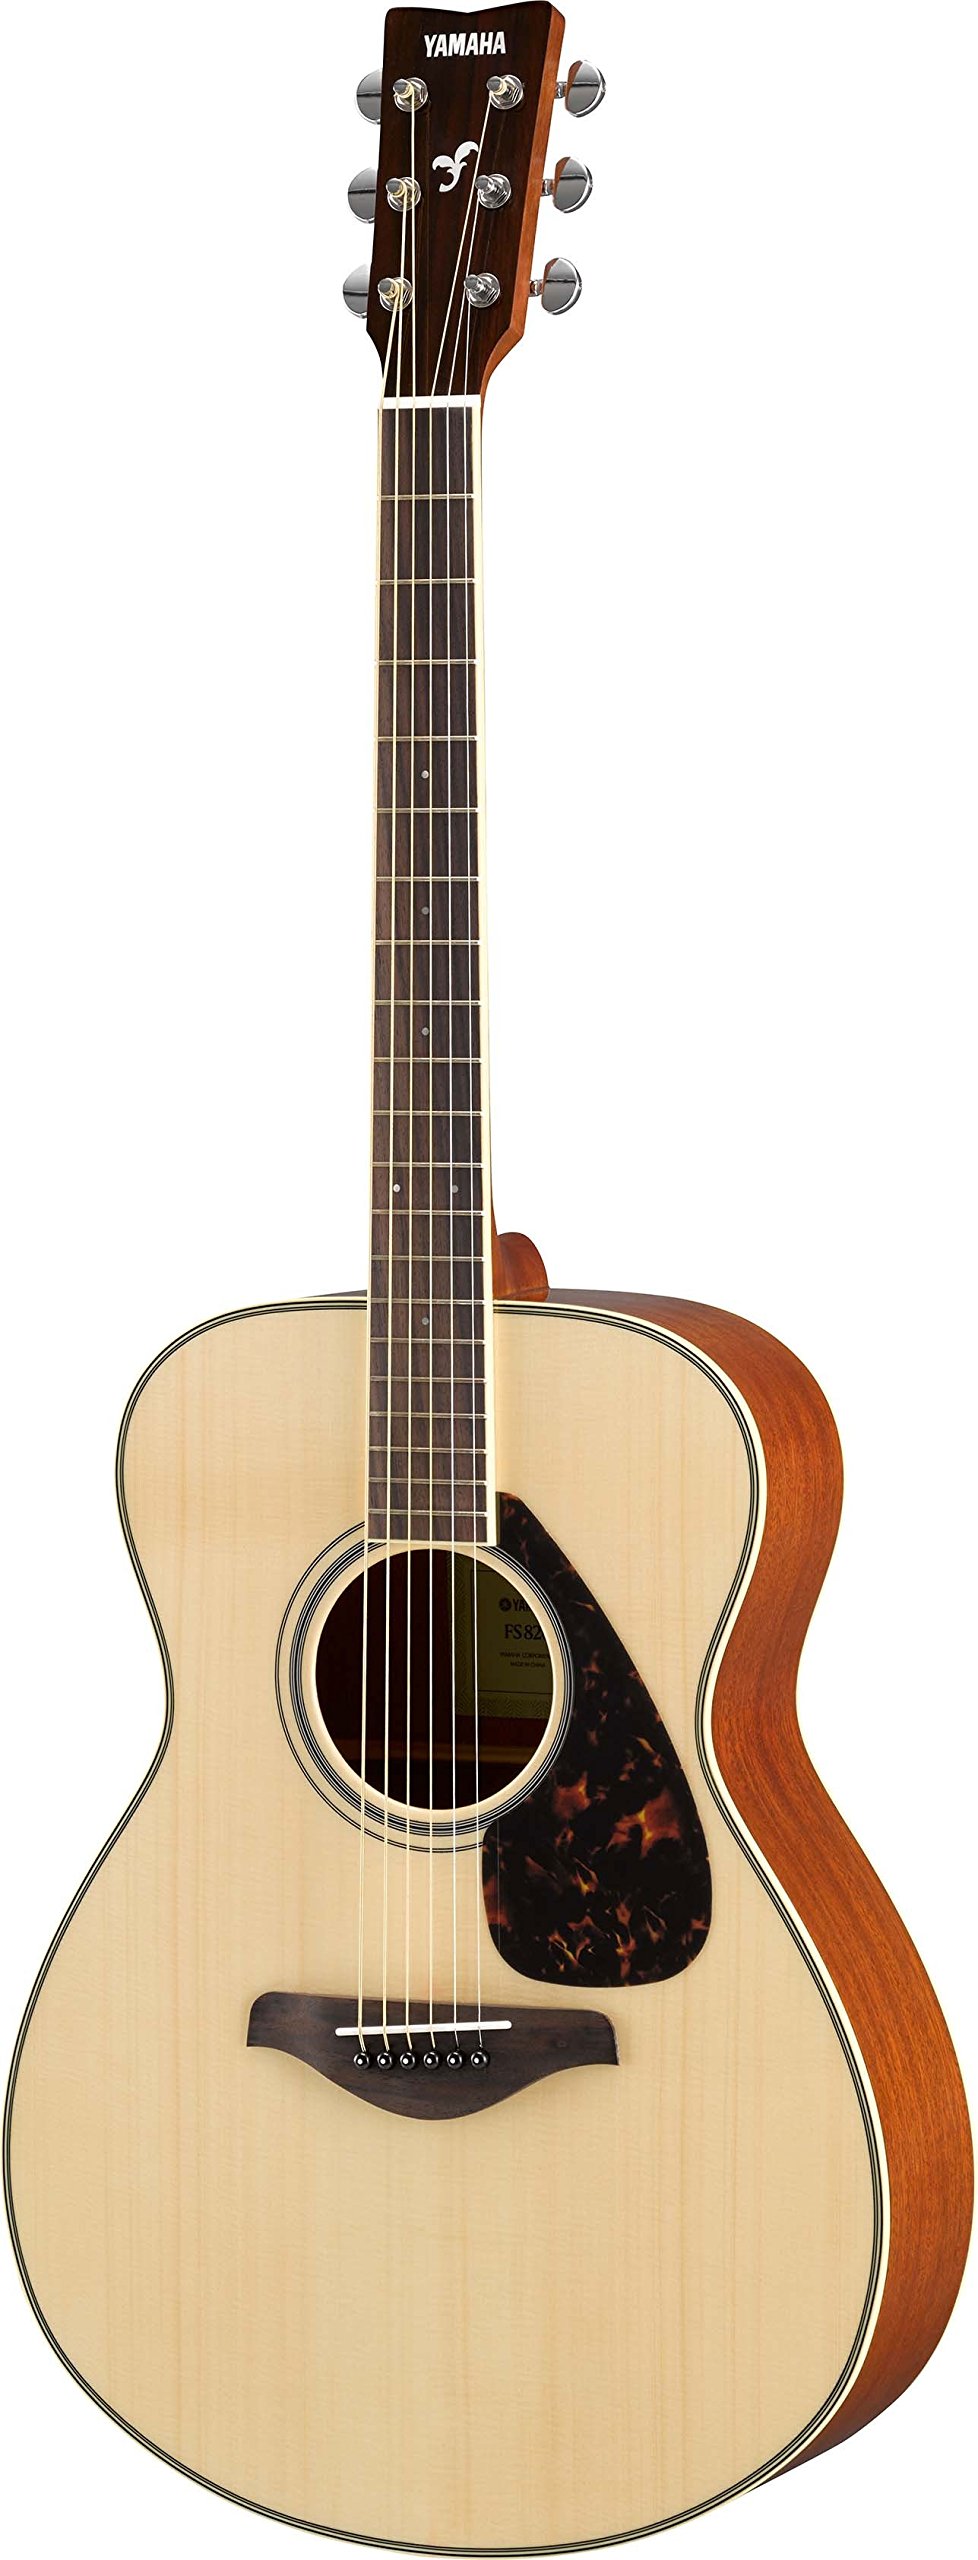 YAMAHA Gitara akustyczna FG820 z solidnym topem